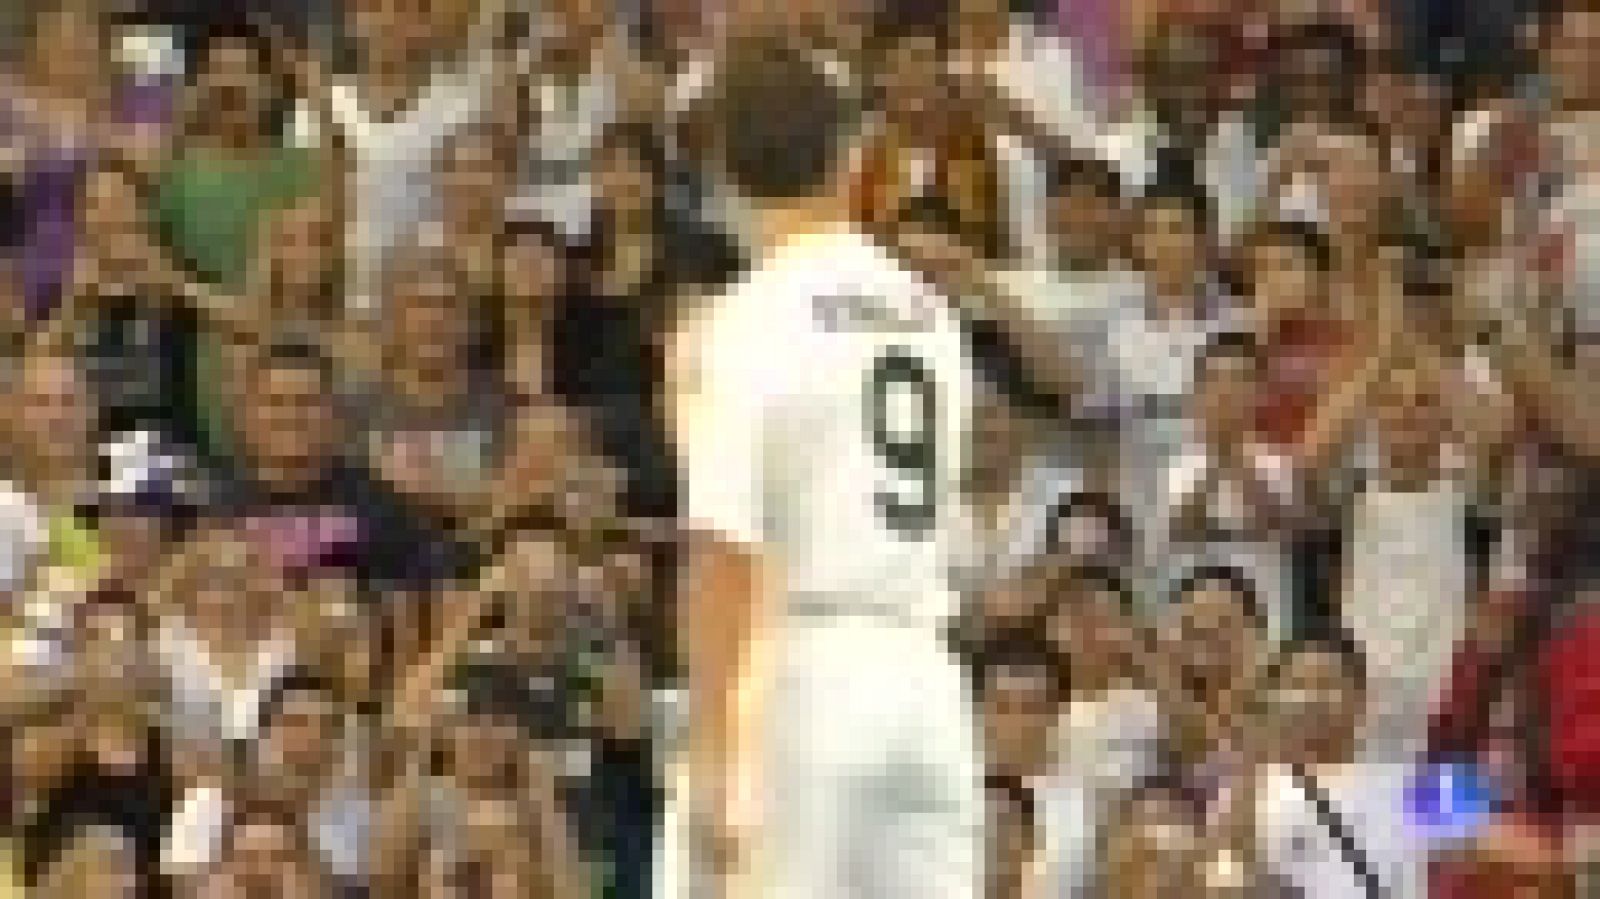 Cristiano Ronaldo marca su propio fin de ciclo en el Madrid